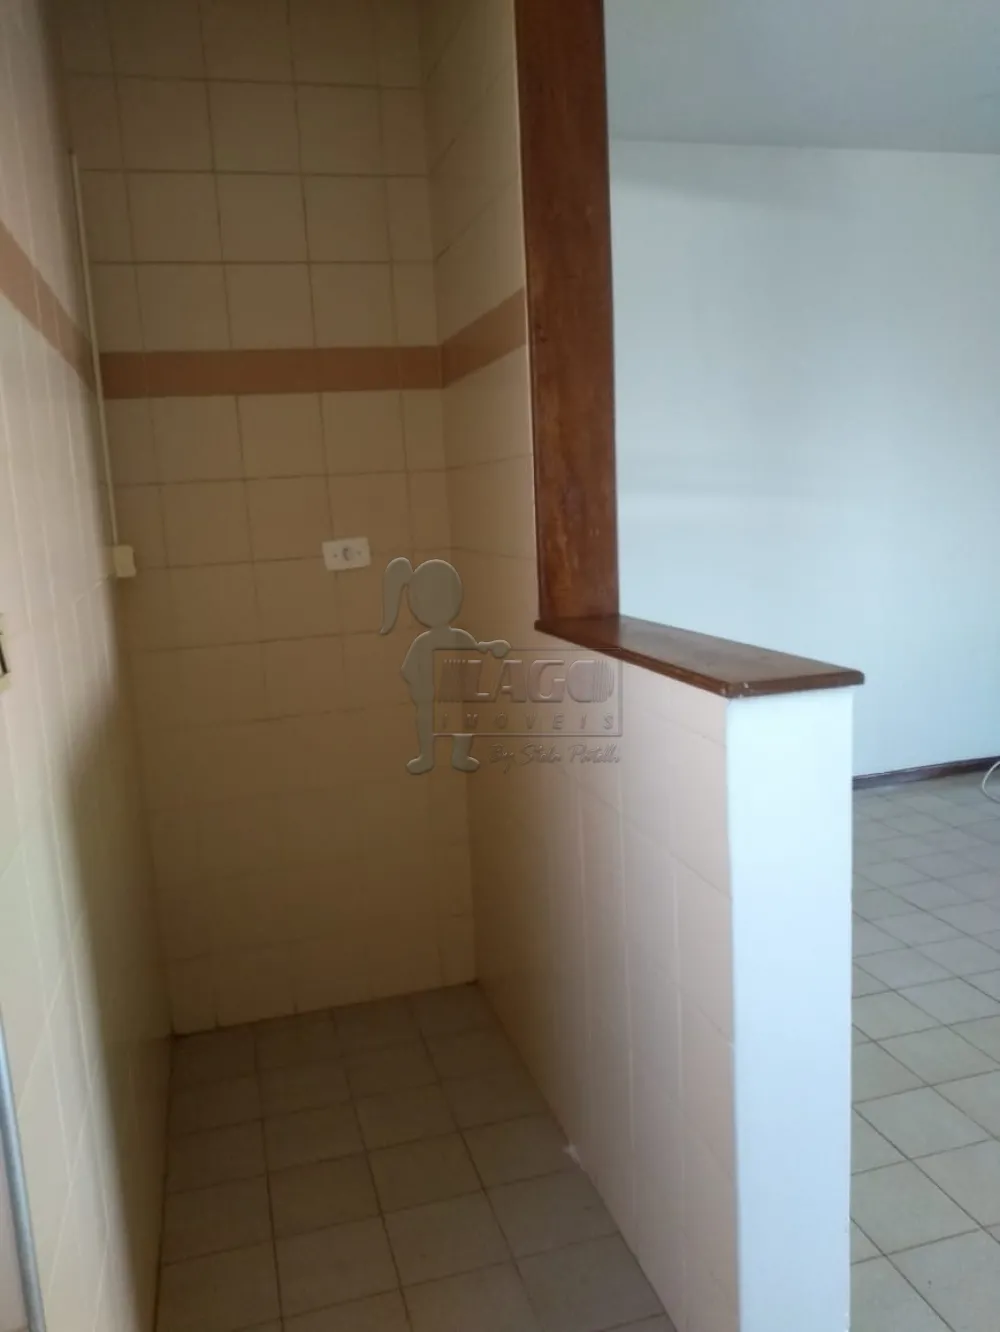 Alugar Apartamentos / Padrão em Ribeirão Preto R$ 870,00 - Foto 7